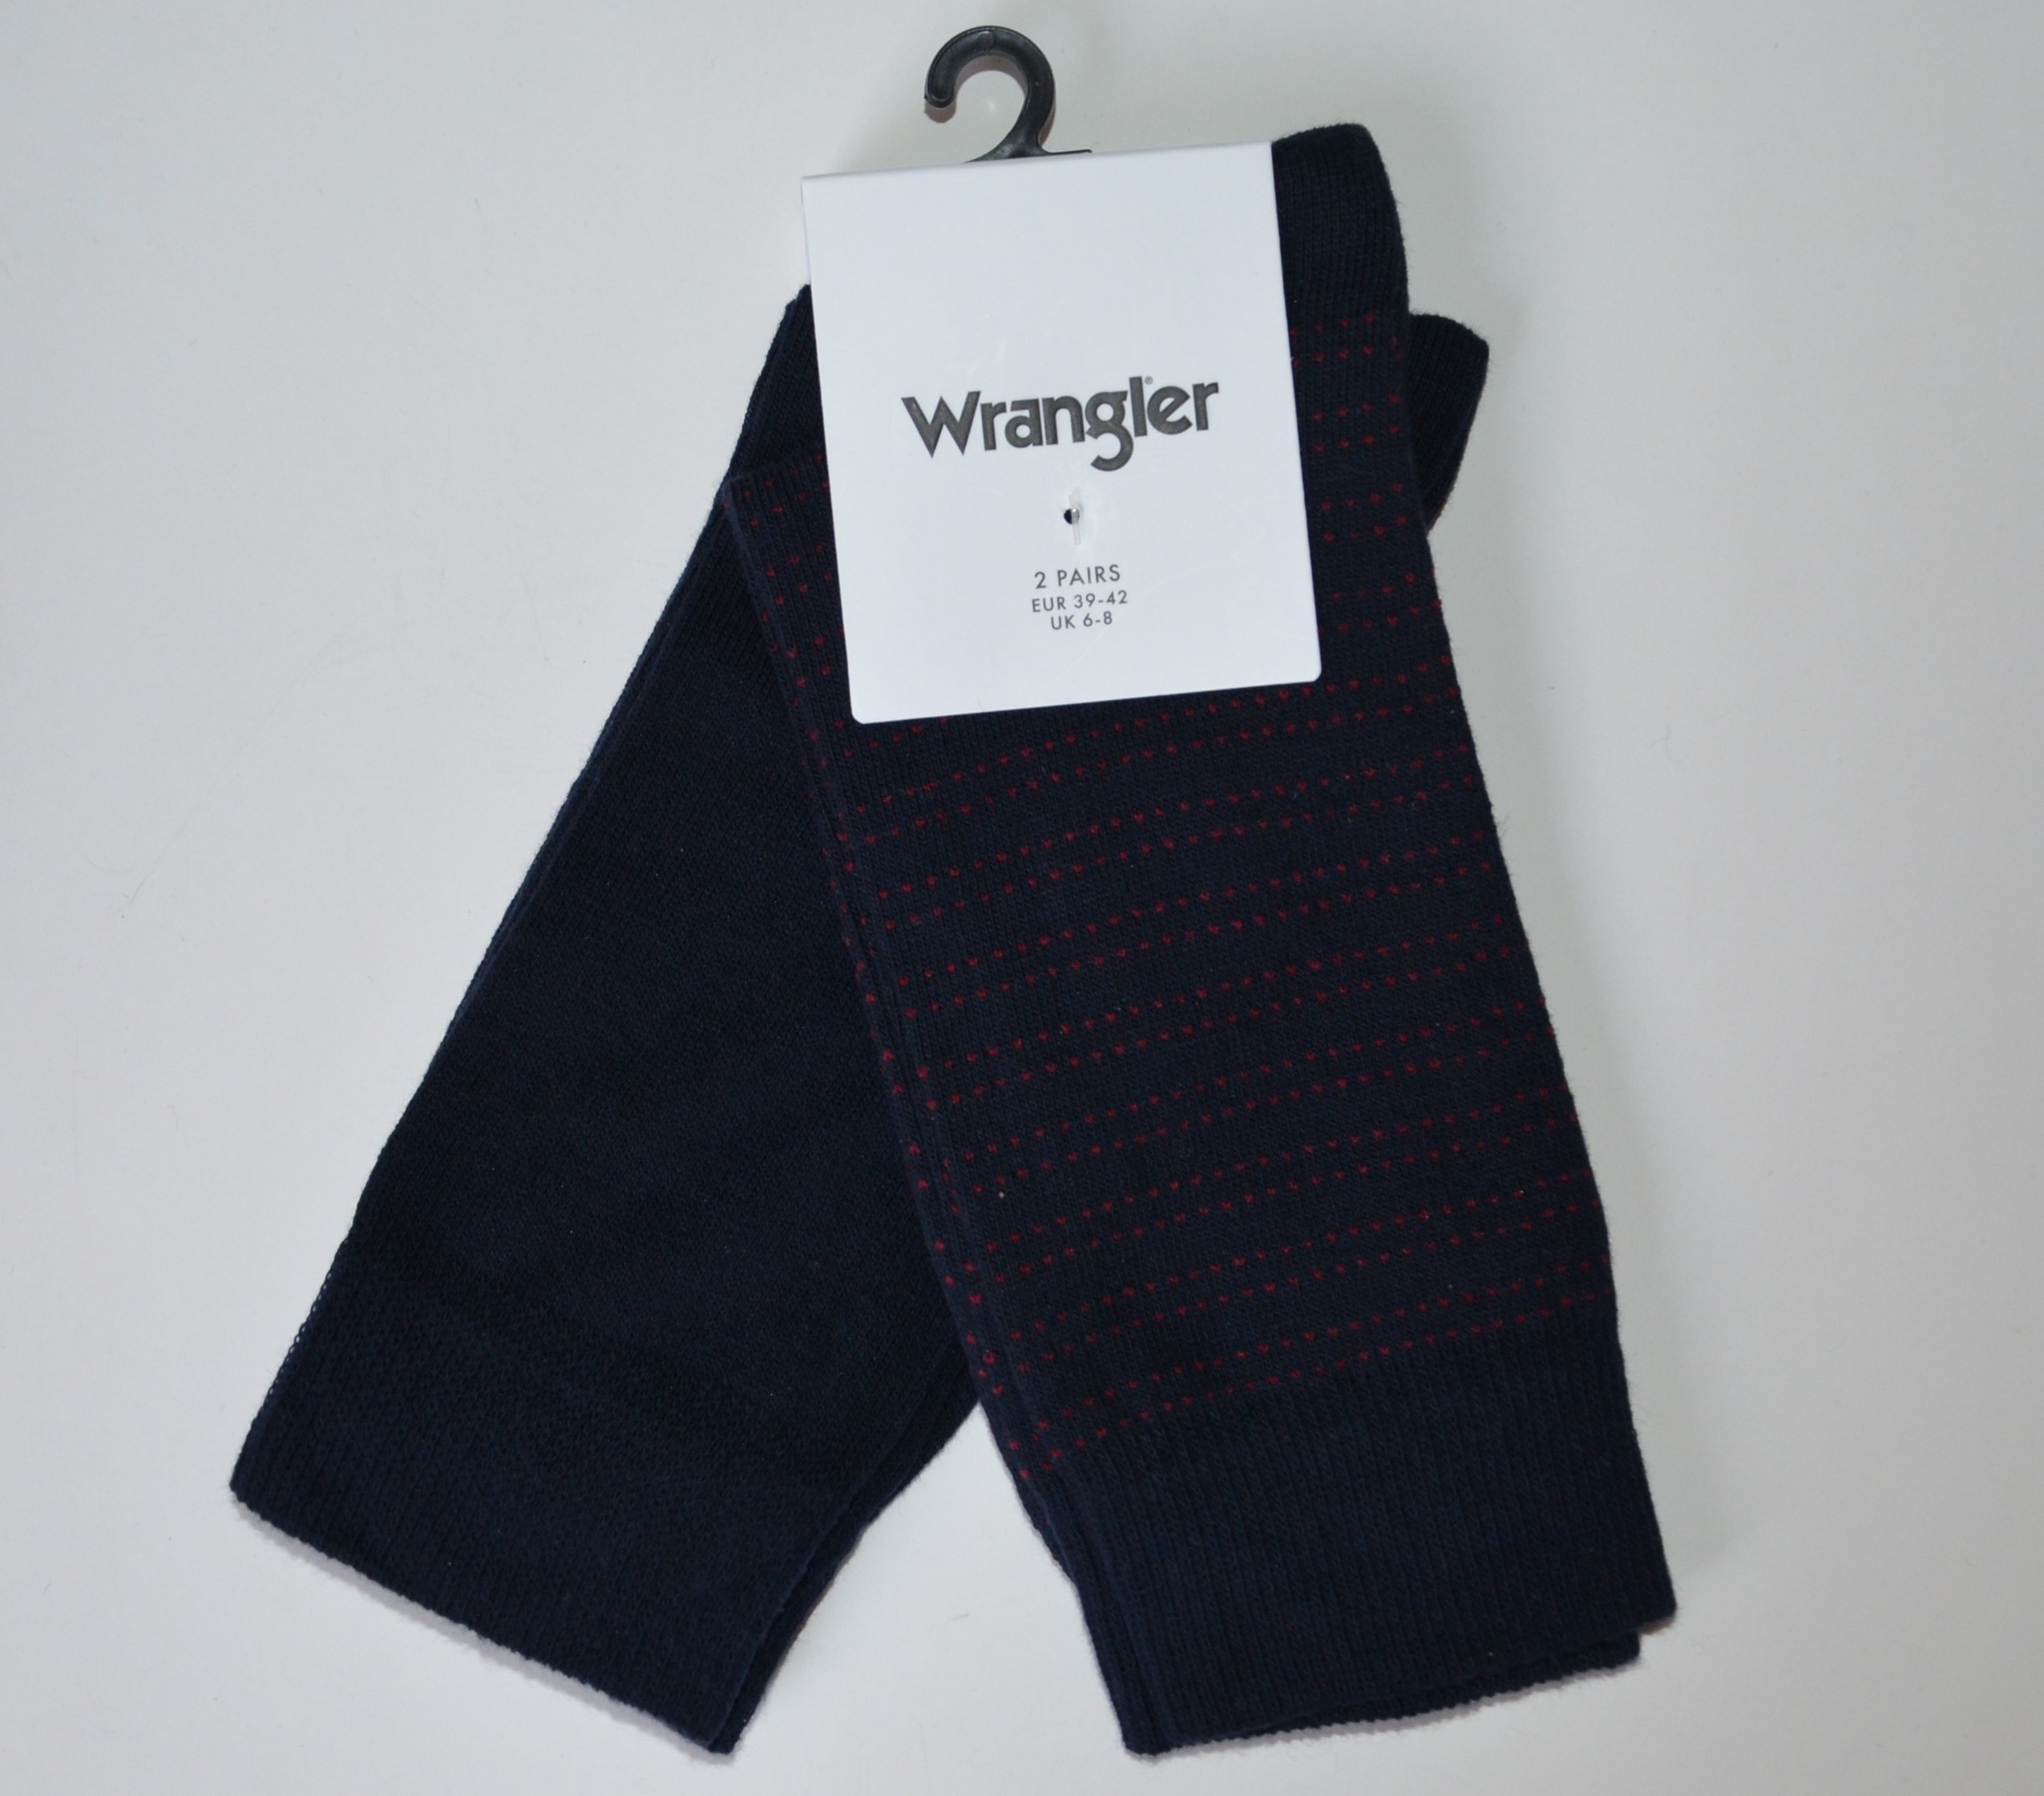 Pánské ponožky WRANGLER 2 páry modré vysoké Velikost: 39-42